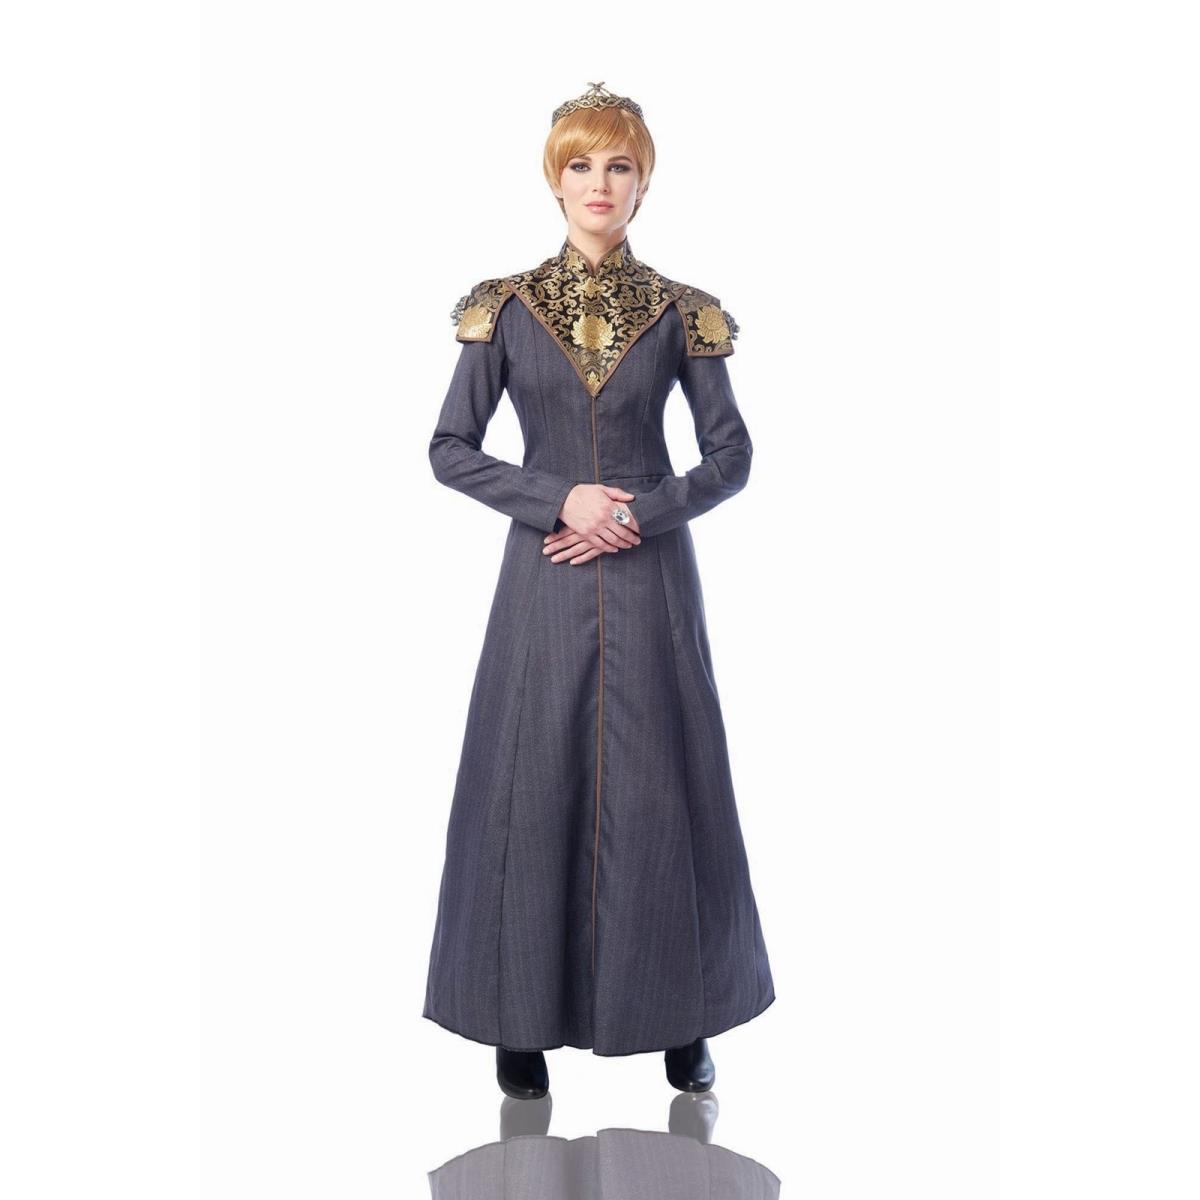 403684 Womens Queen Of Kingdoms Costume - Medium